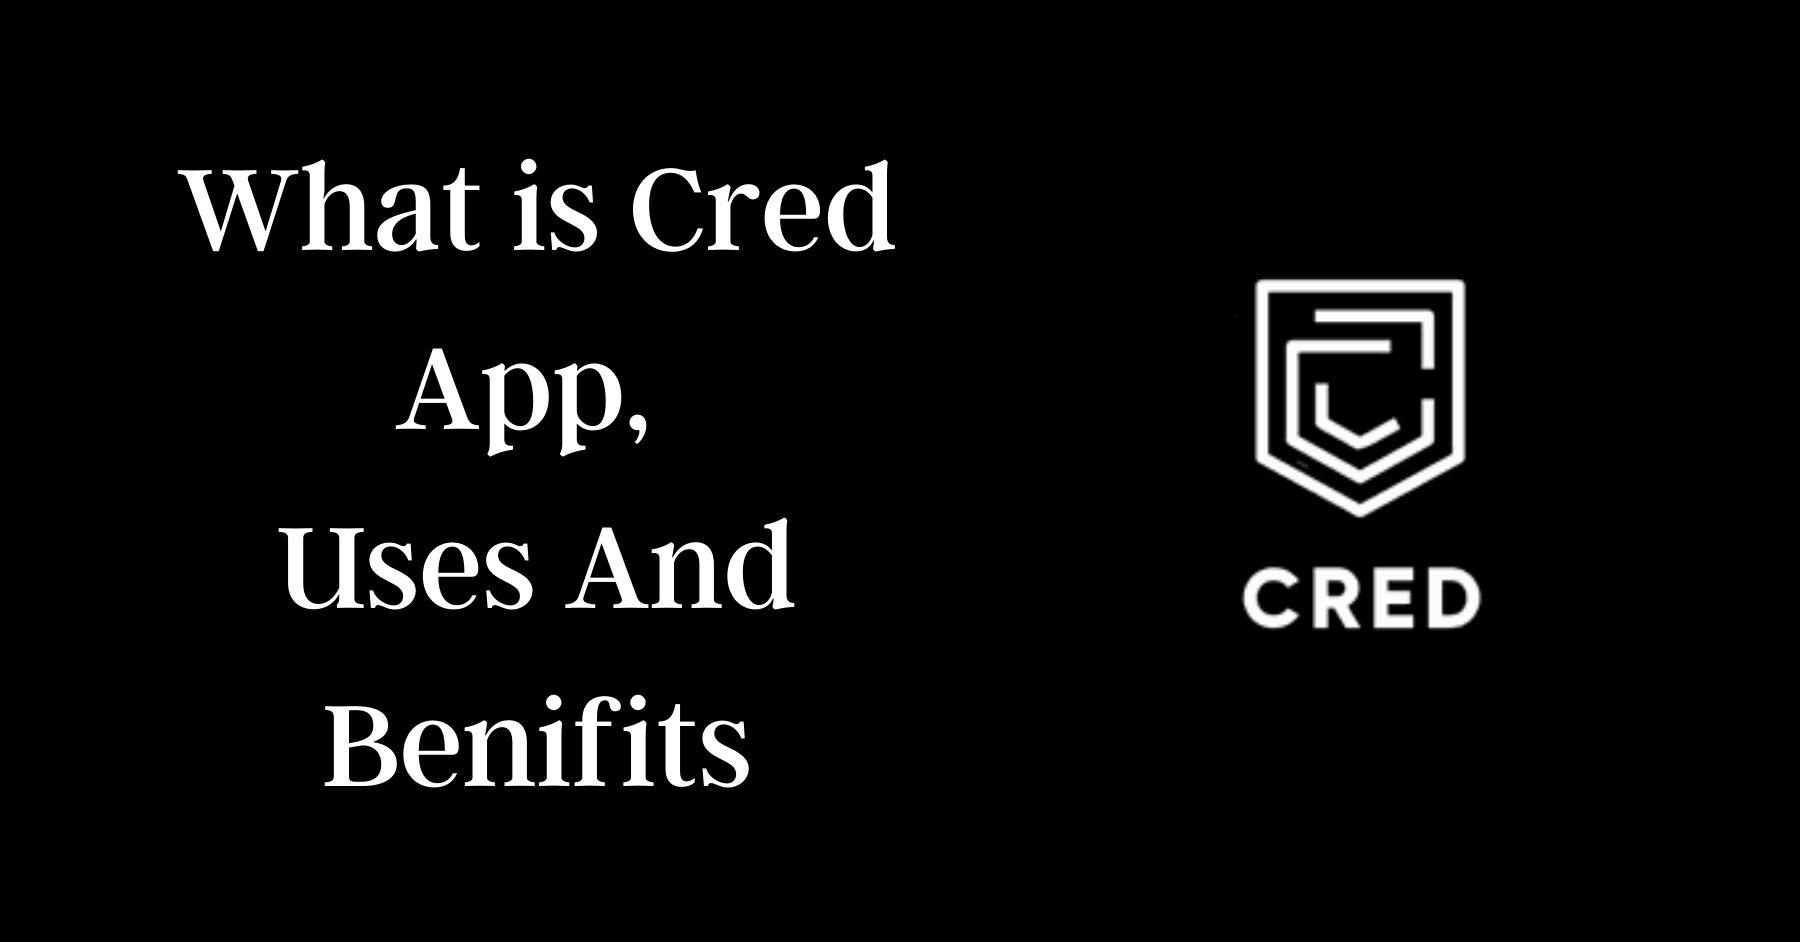 Crea App